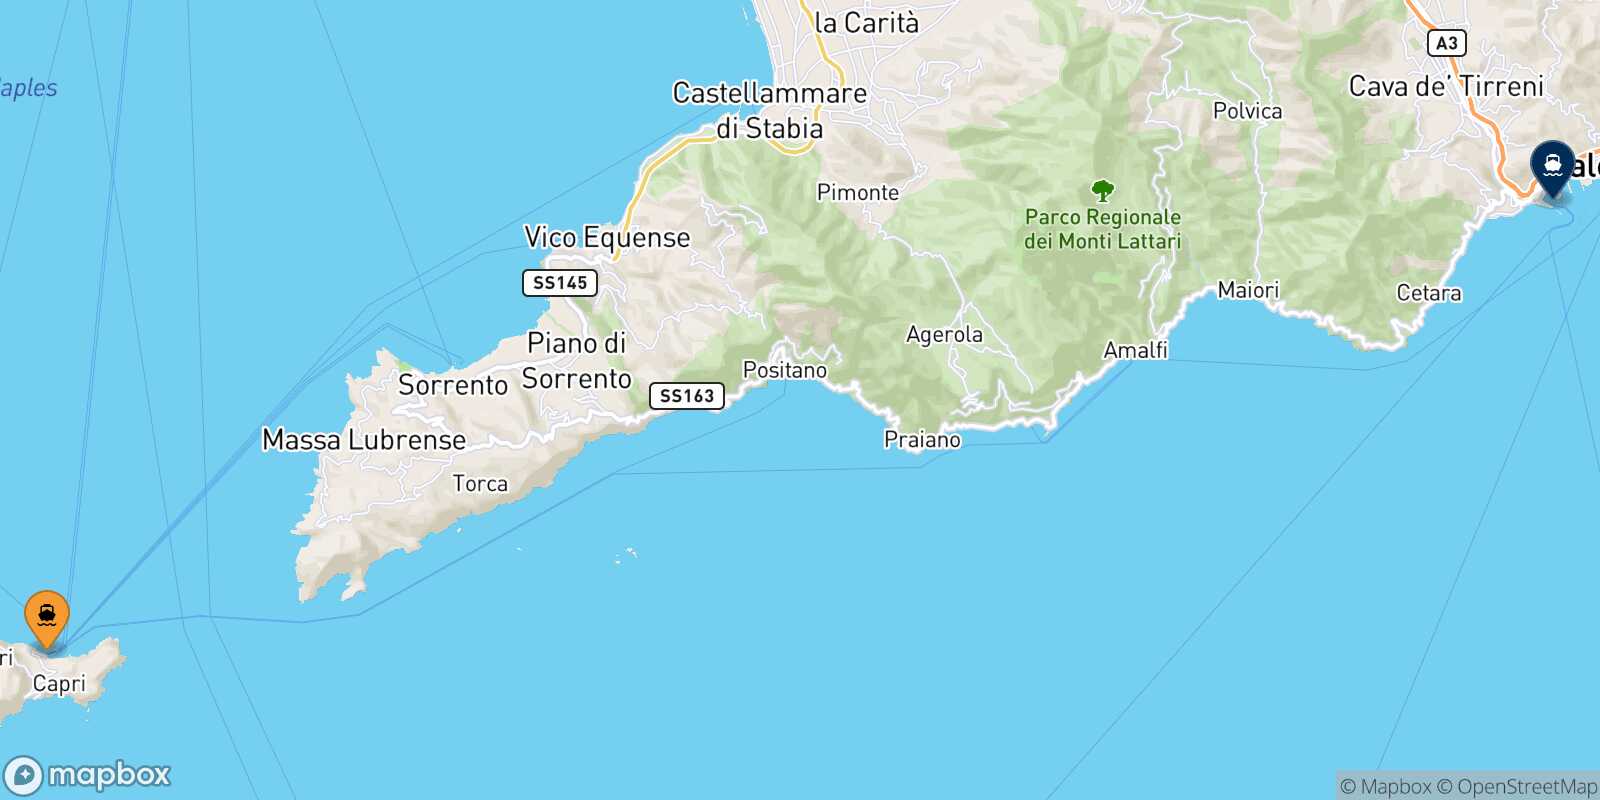 Mapa de la ruta Capri Salerno